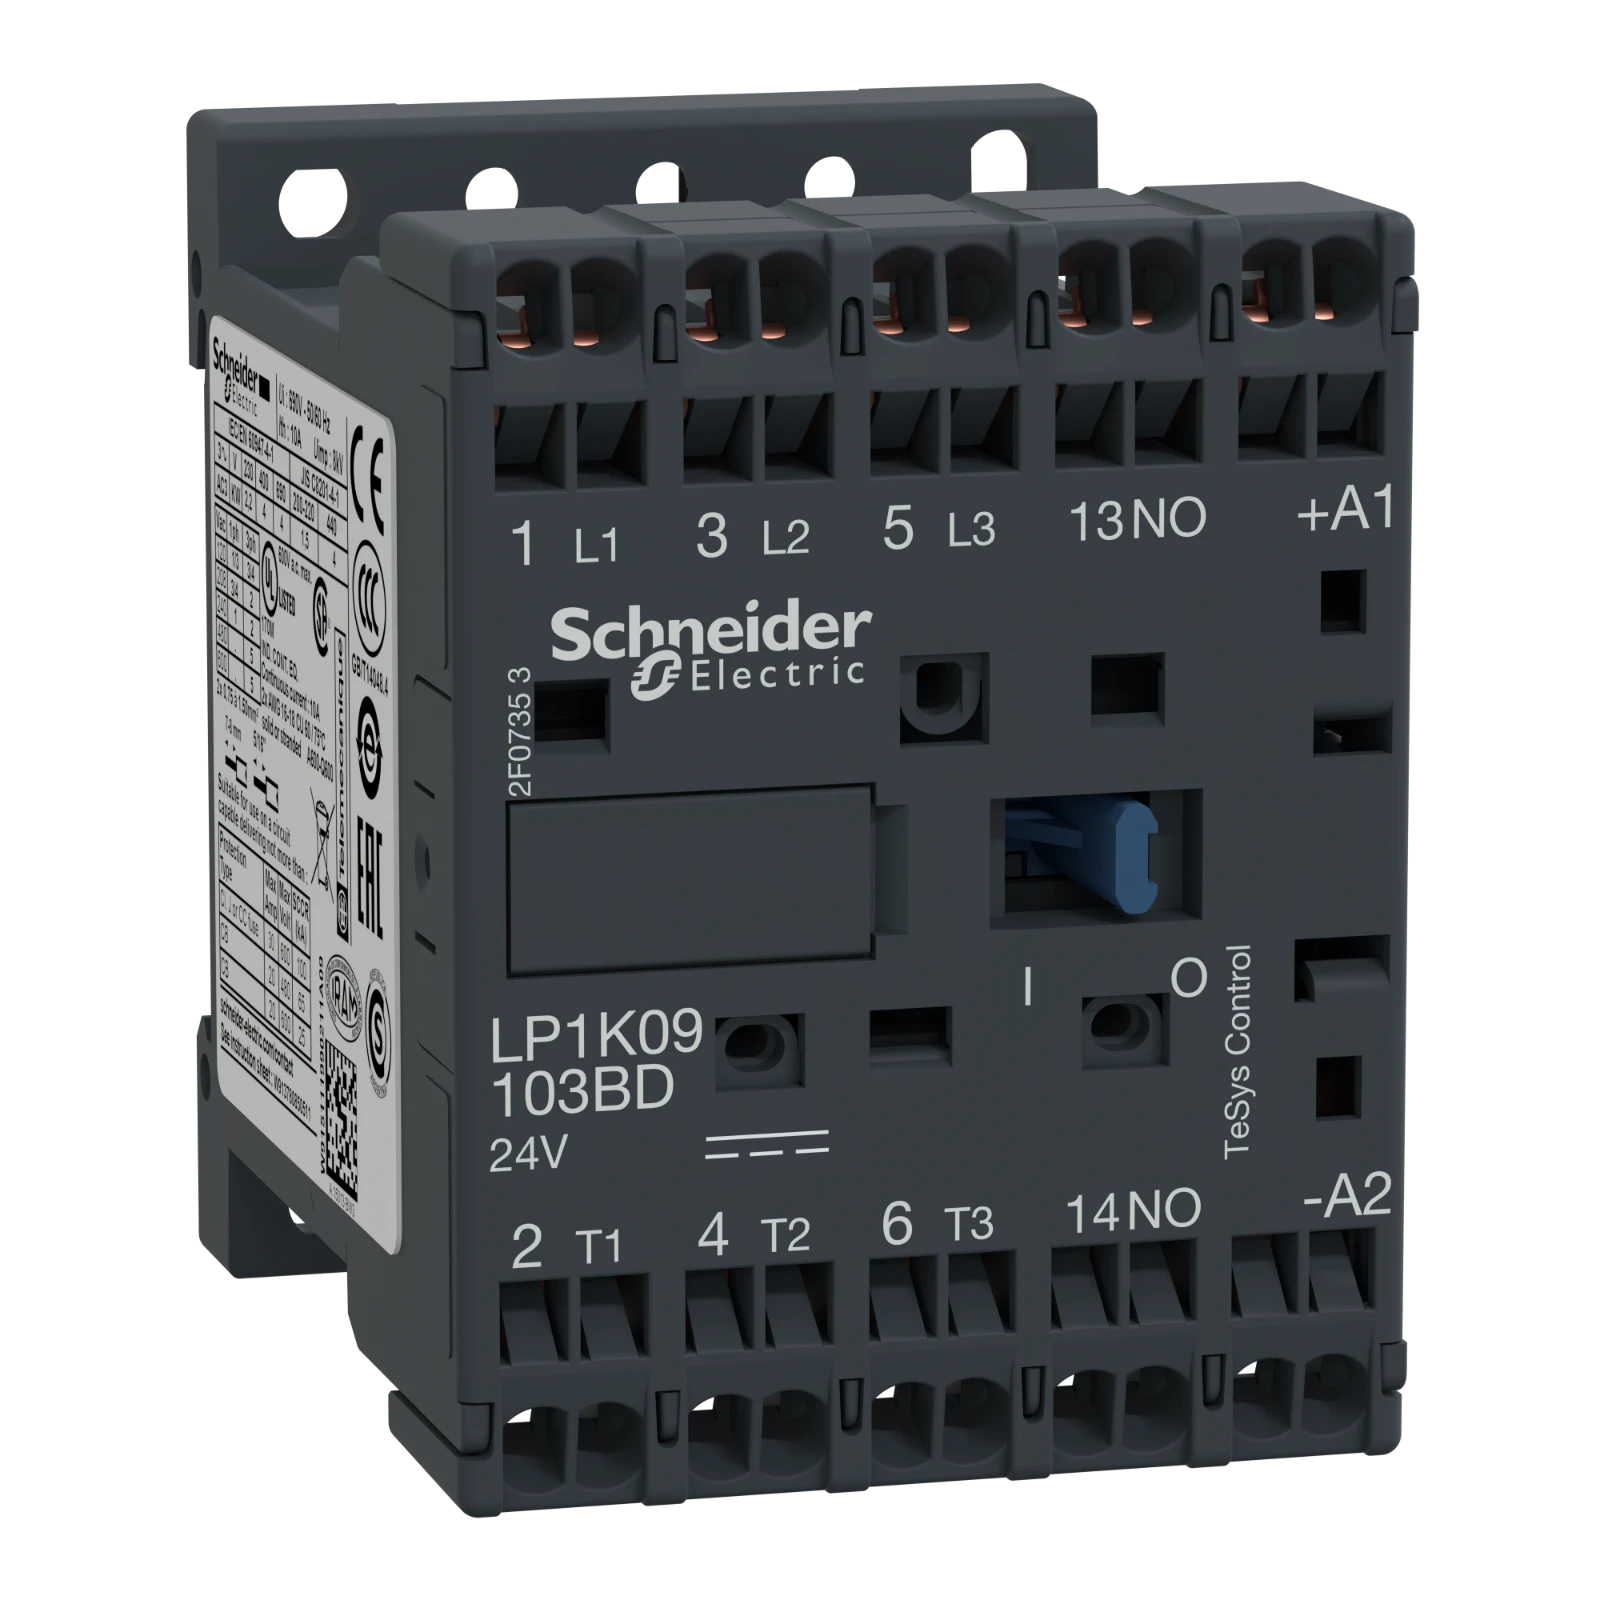 2339691 - Schneider Electric LP1K09103BD